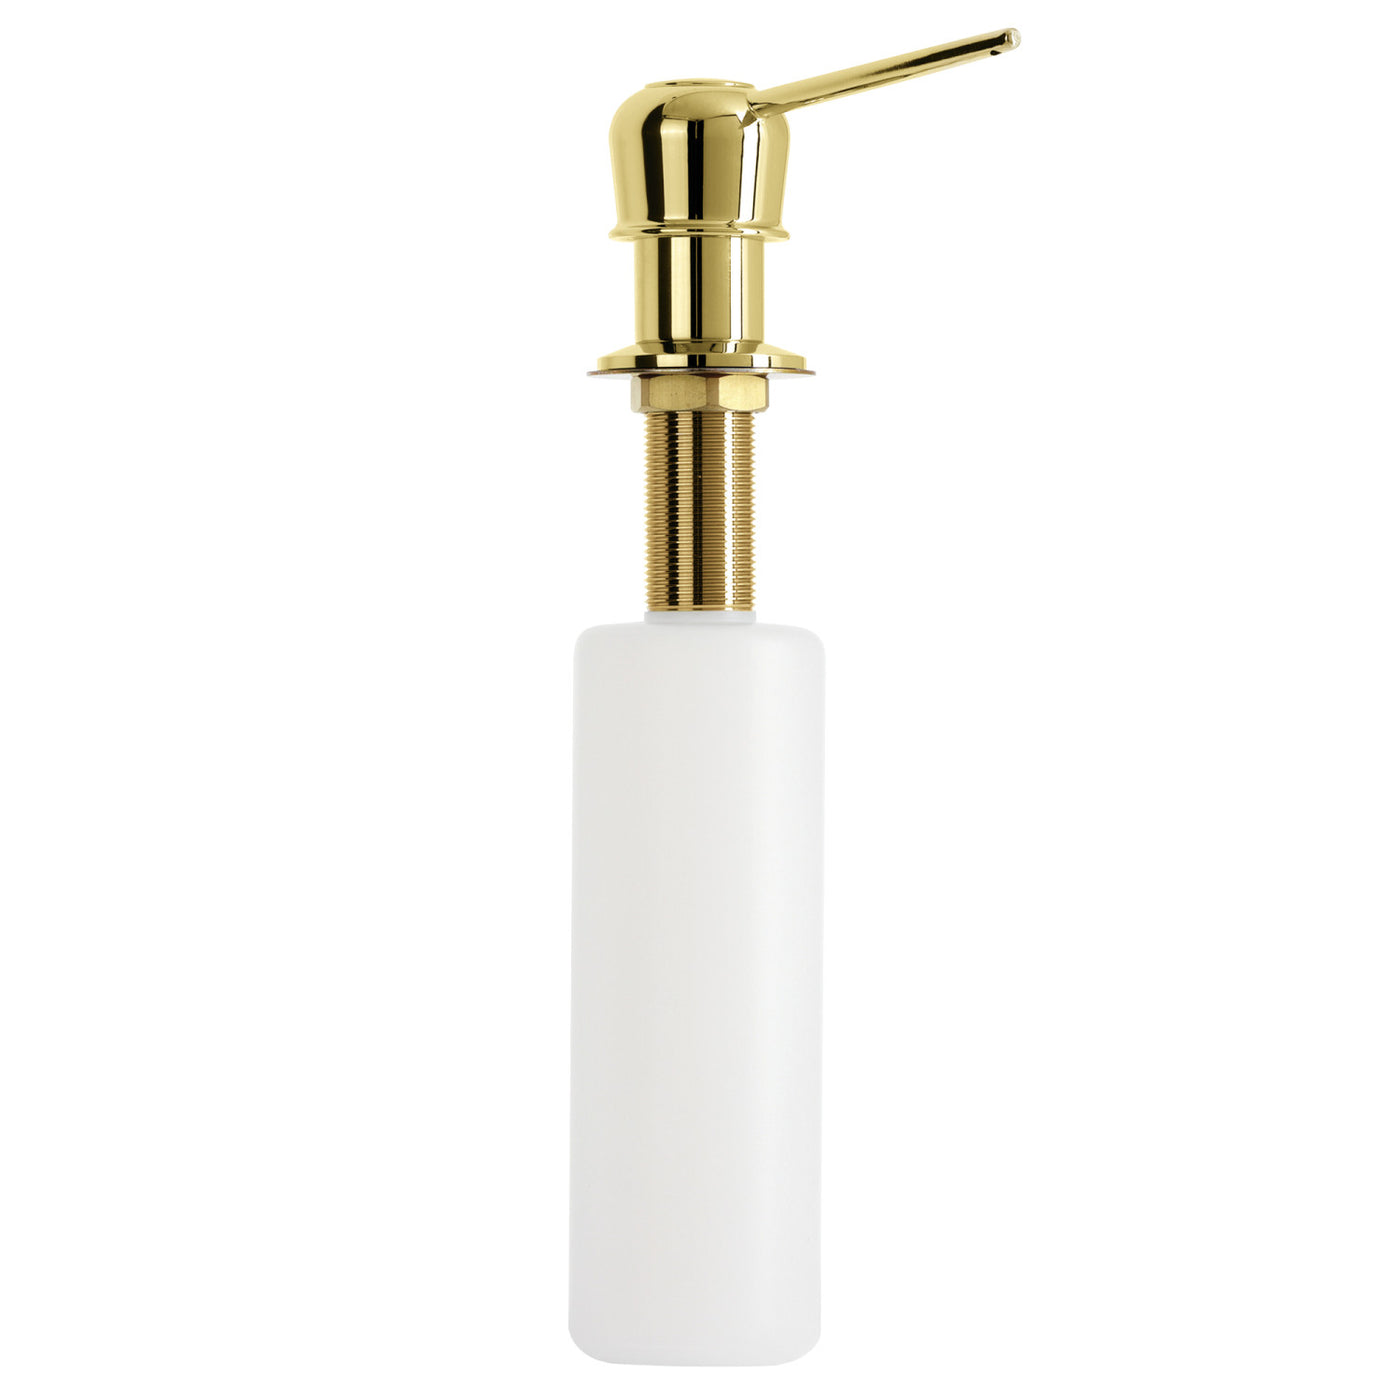 Elements of Design ESD1602 Soap Dispenser, Polished Brass